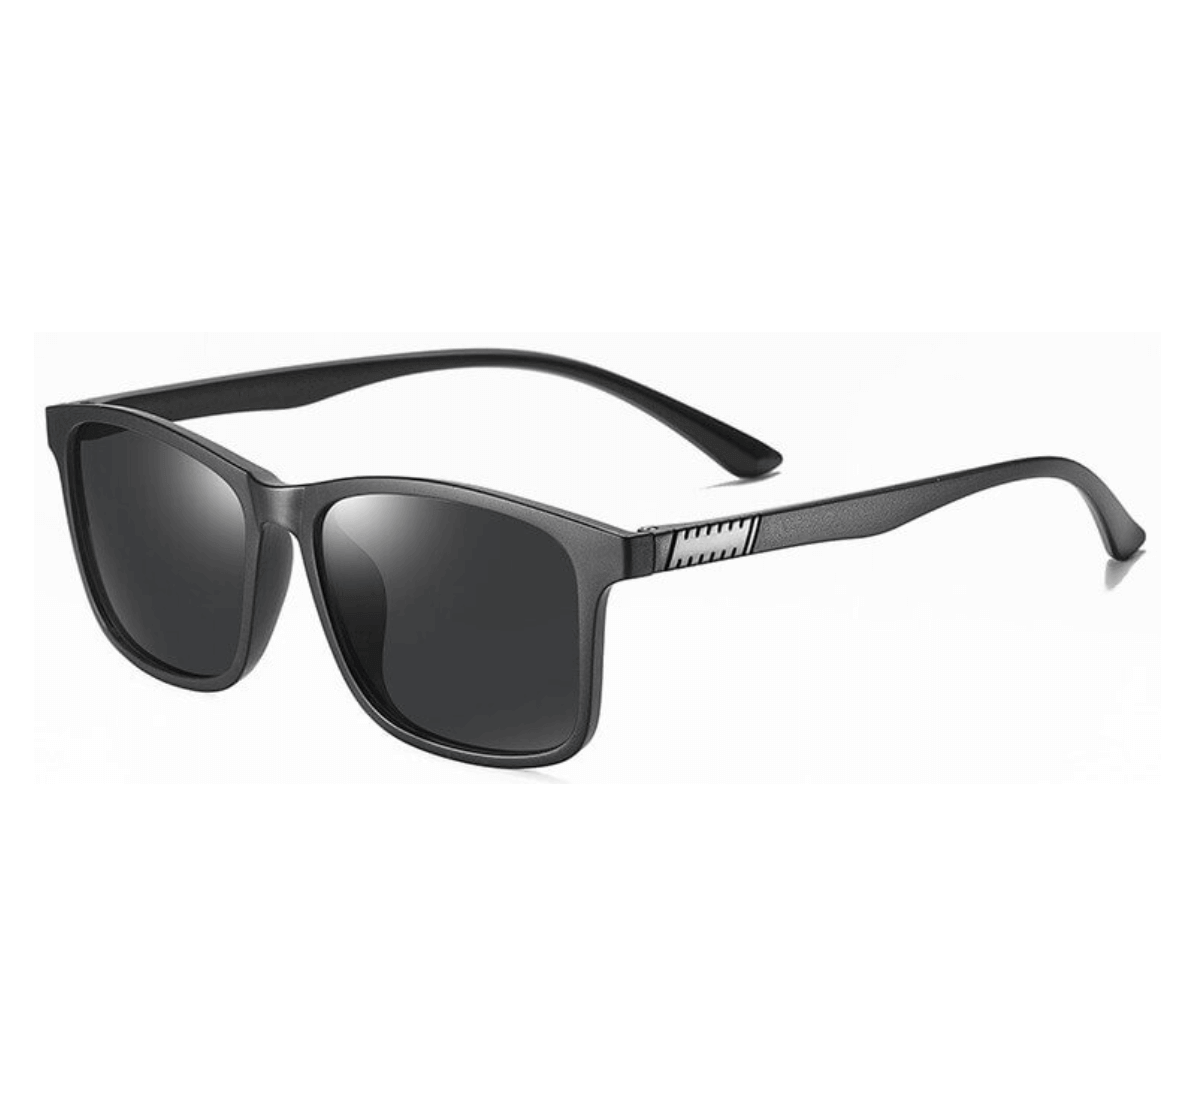 wholesale authentic designer sunglasses, wholesale square sunglasses, best wholesale sunglasses, Sunglasses Manufacturer in China